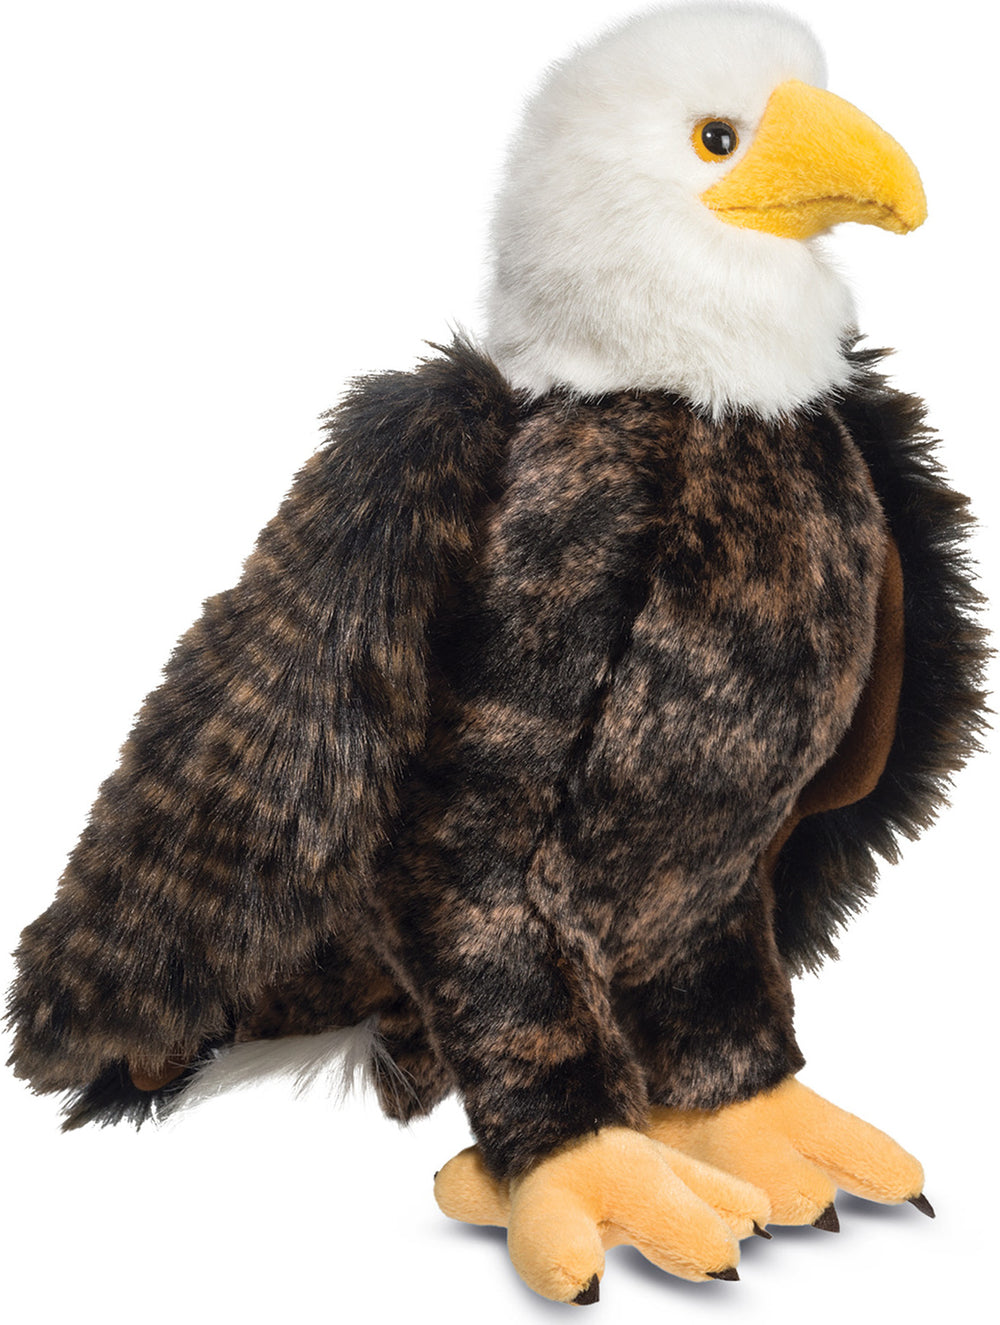 Adler Bald Eagle